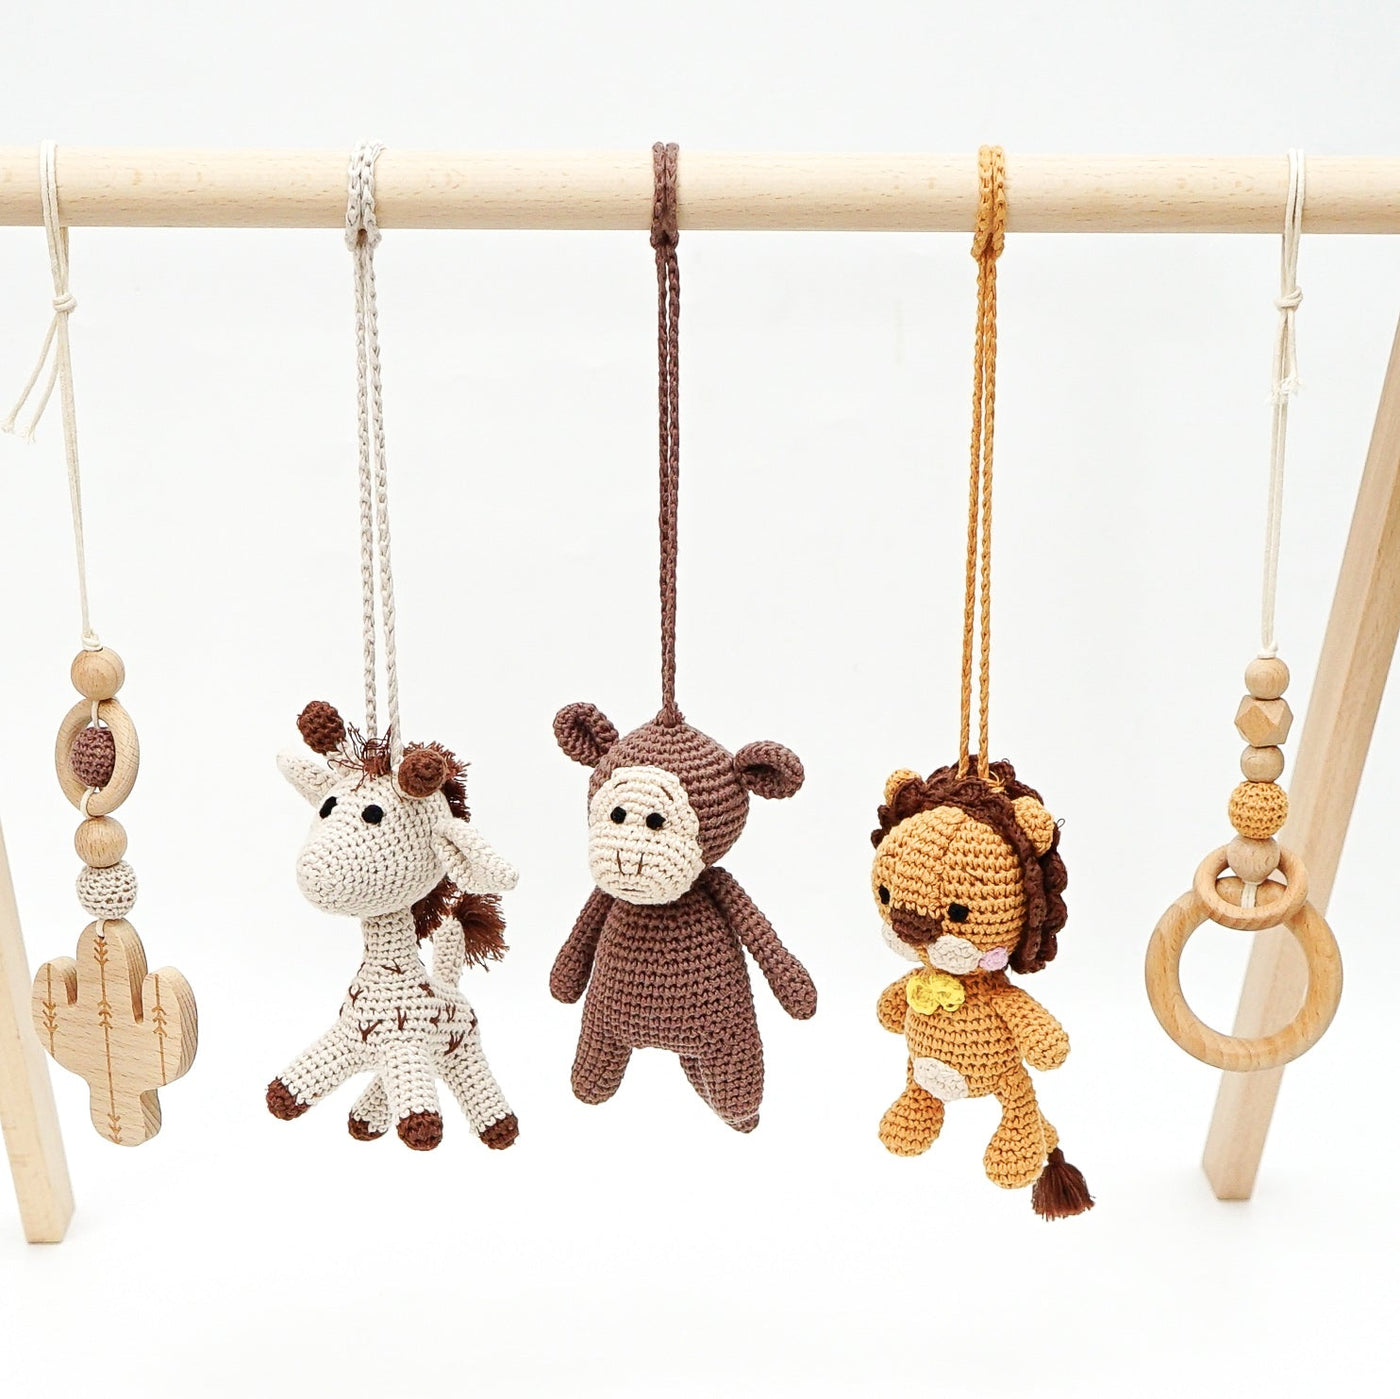 Handmade Crochet Toys for Gym | Savanna Friends toys Jabaloo 